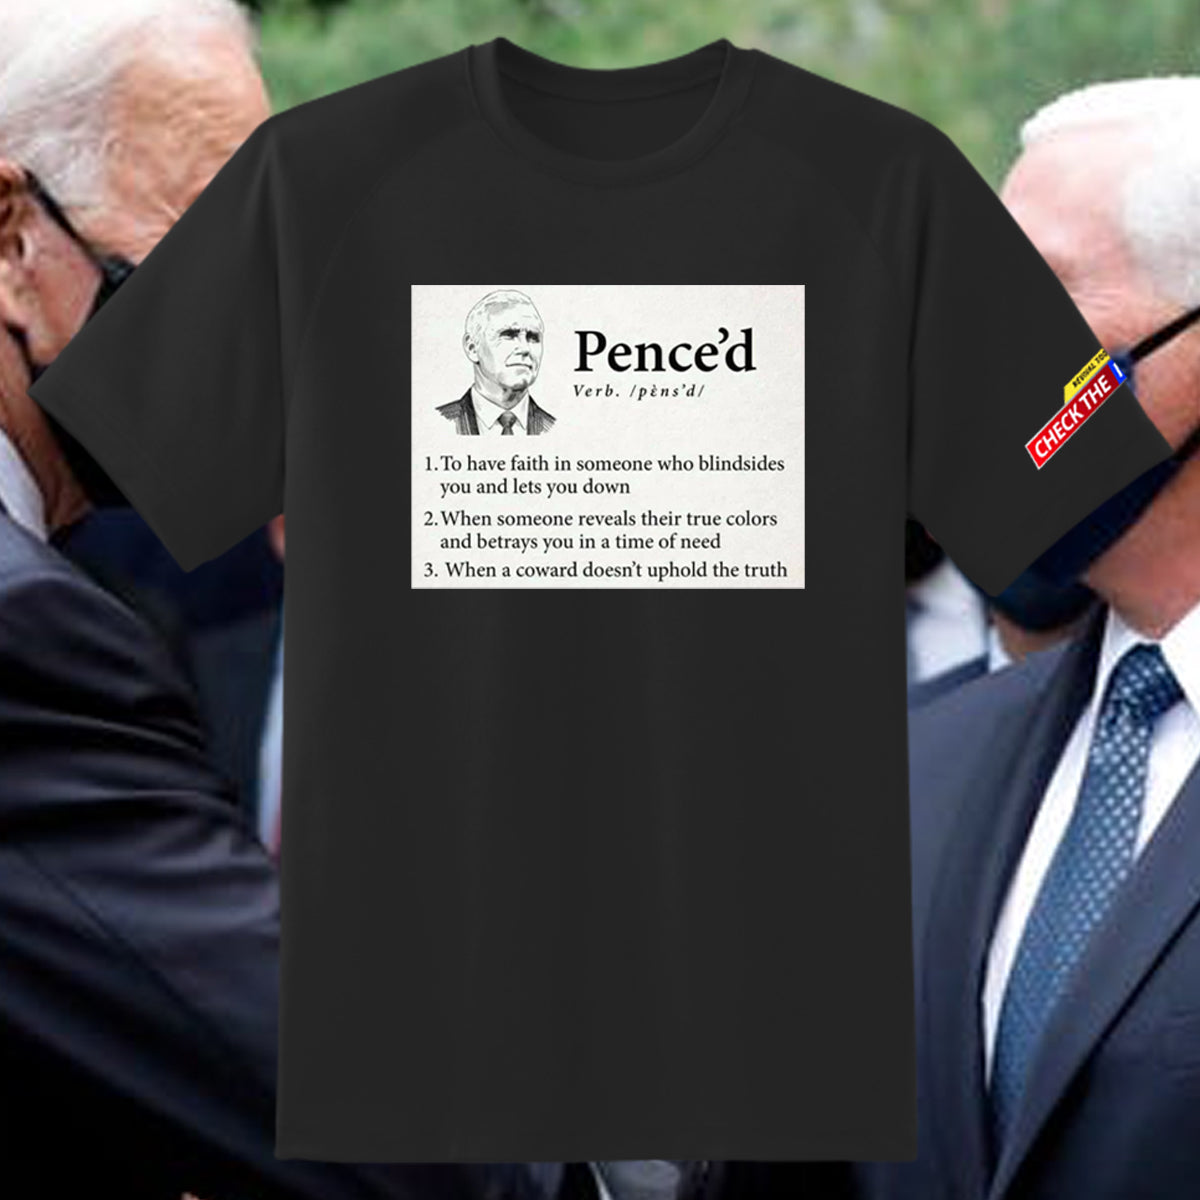 "Pence'd" T-Shirt